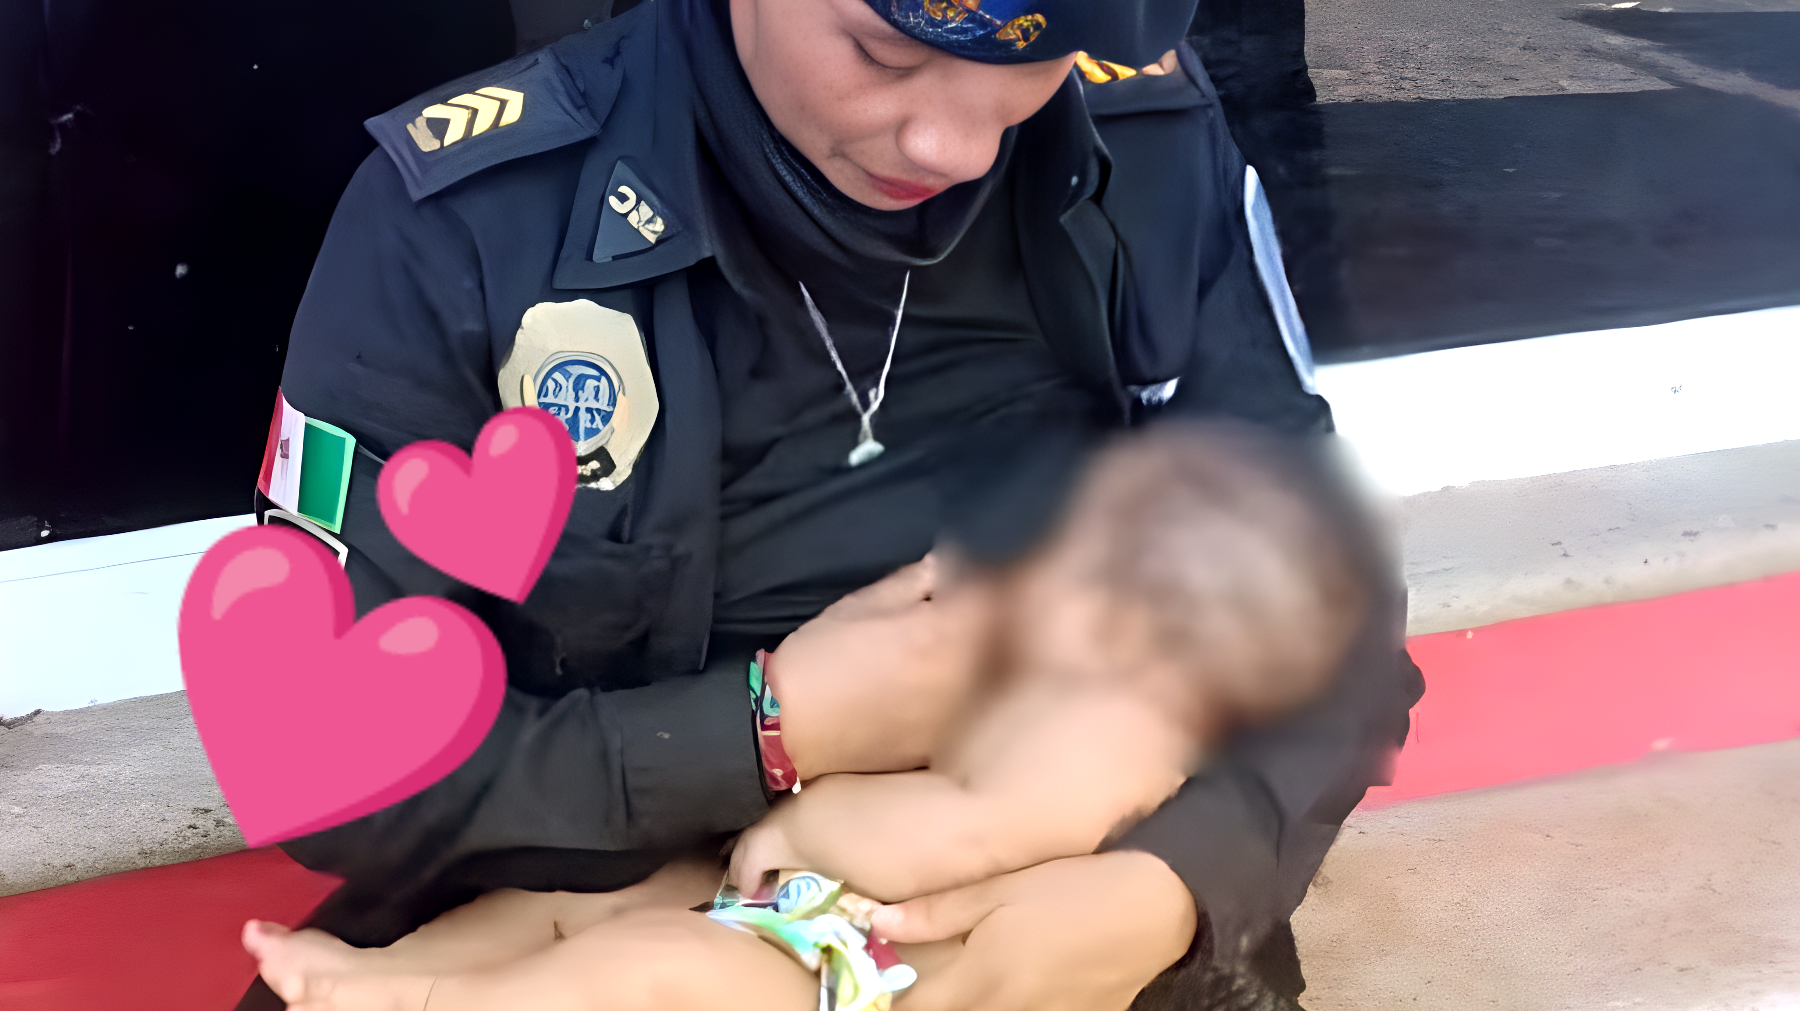 La poliziotta commuove il mondo: il gesto di umanità che l'ha portata alla promozione. "Ho pensato ai miei figli"